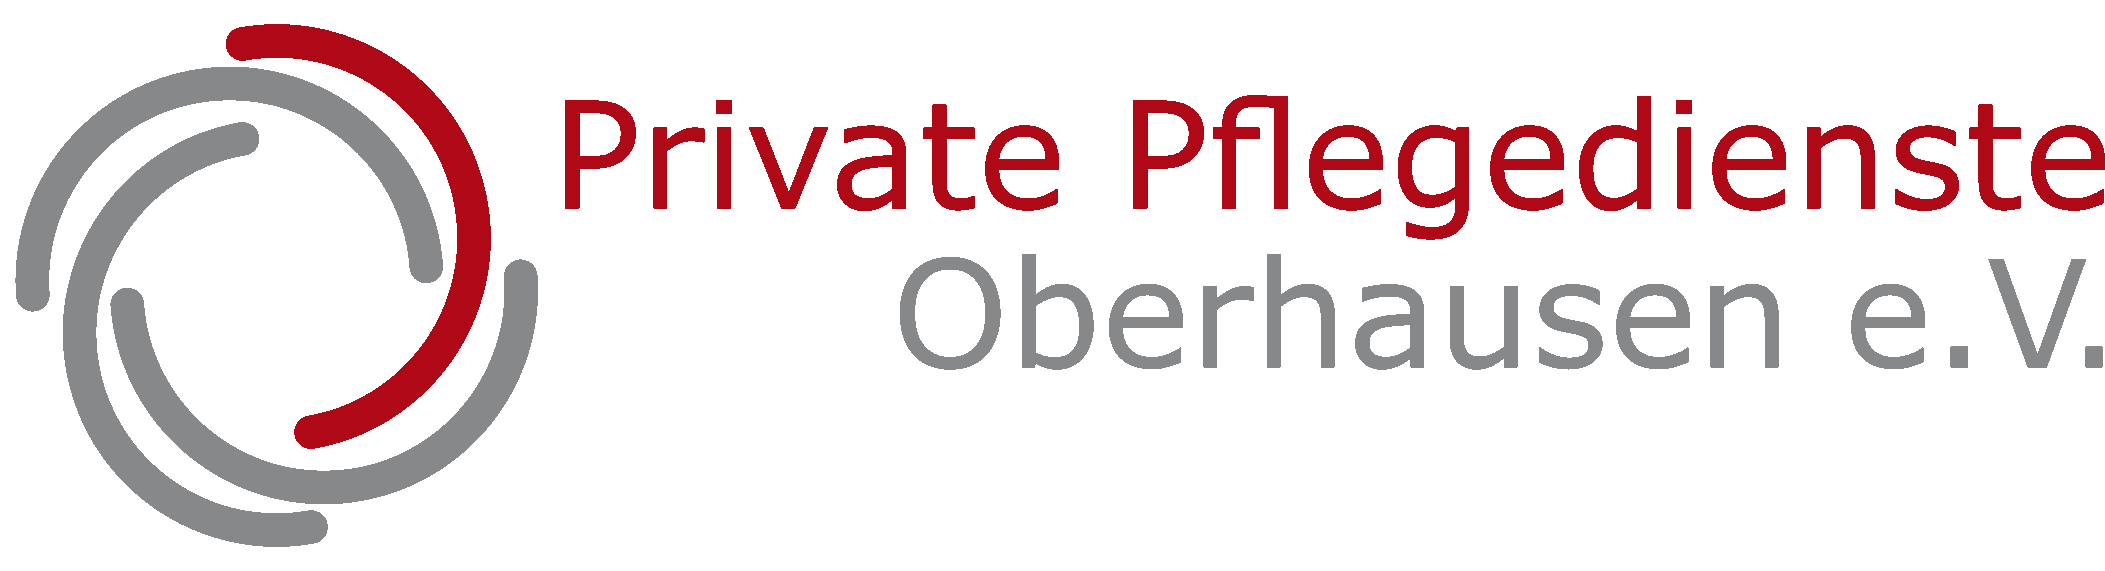 Private Pflegedienste Oberhausen - Neue Pflege